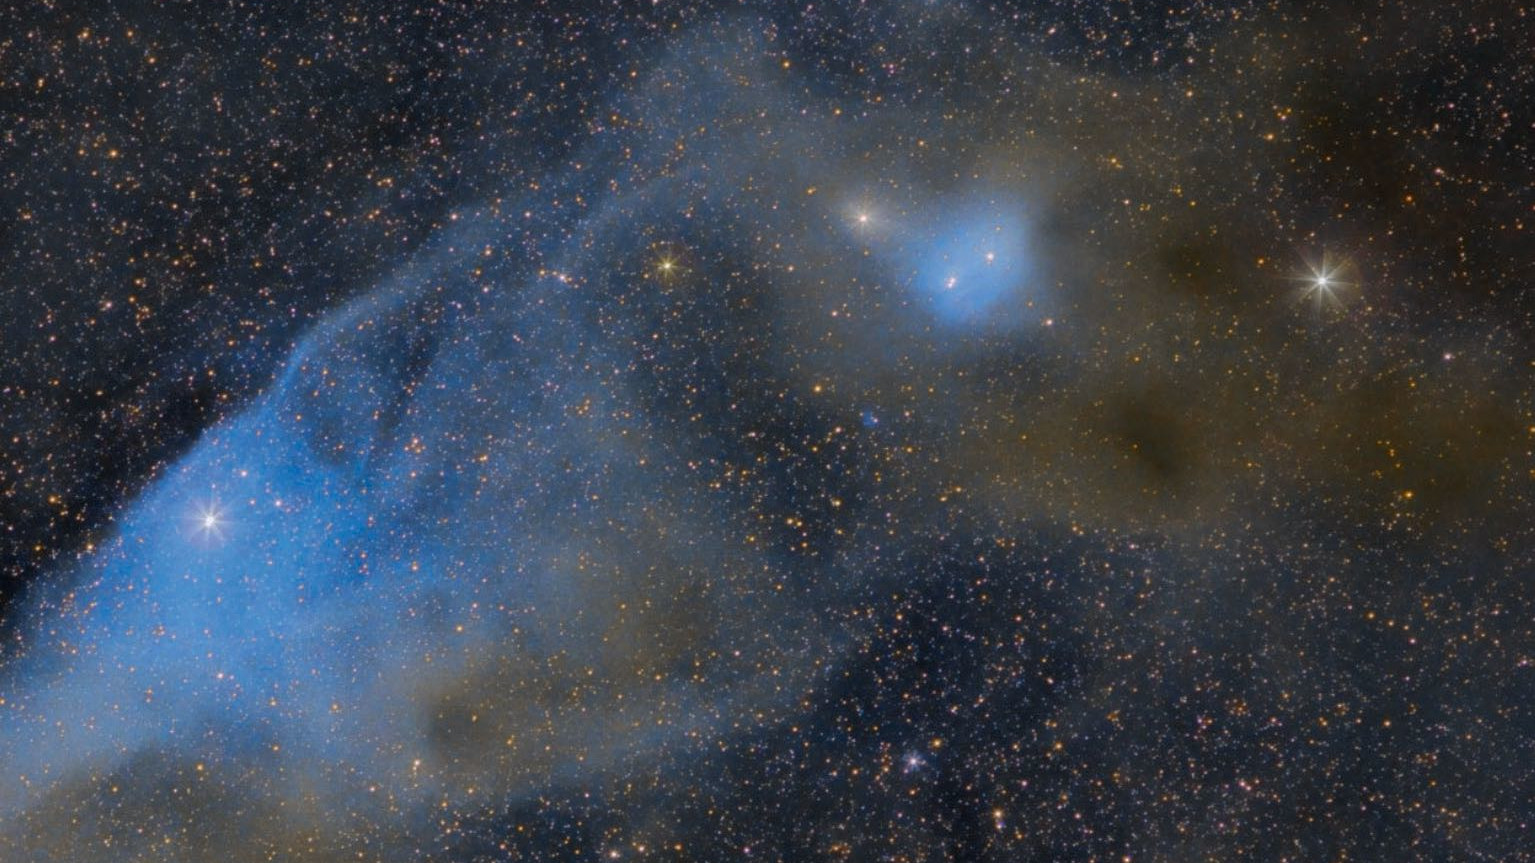 Mgławica "Błękitny Koński Łeb", IC 4592, w Skorpionie (kierunek północny na dole). ν Scorpii leży na mostku nosowym i nadaje mgławicy niebieskawe zabarwienie. Poniżej "uszu" widać również niebieskawą mgławicę IC 4601. Scott Rosen